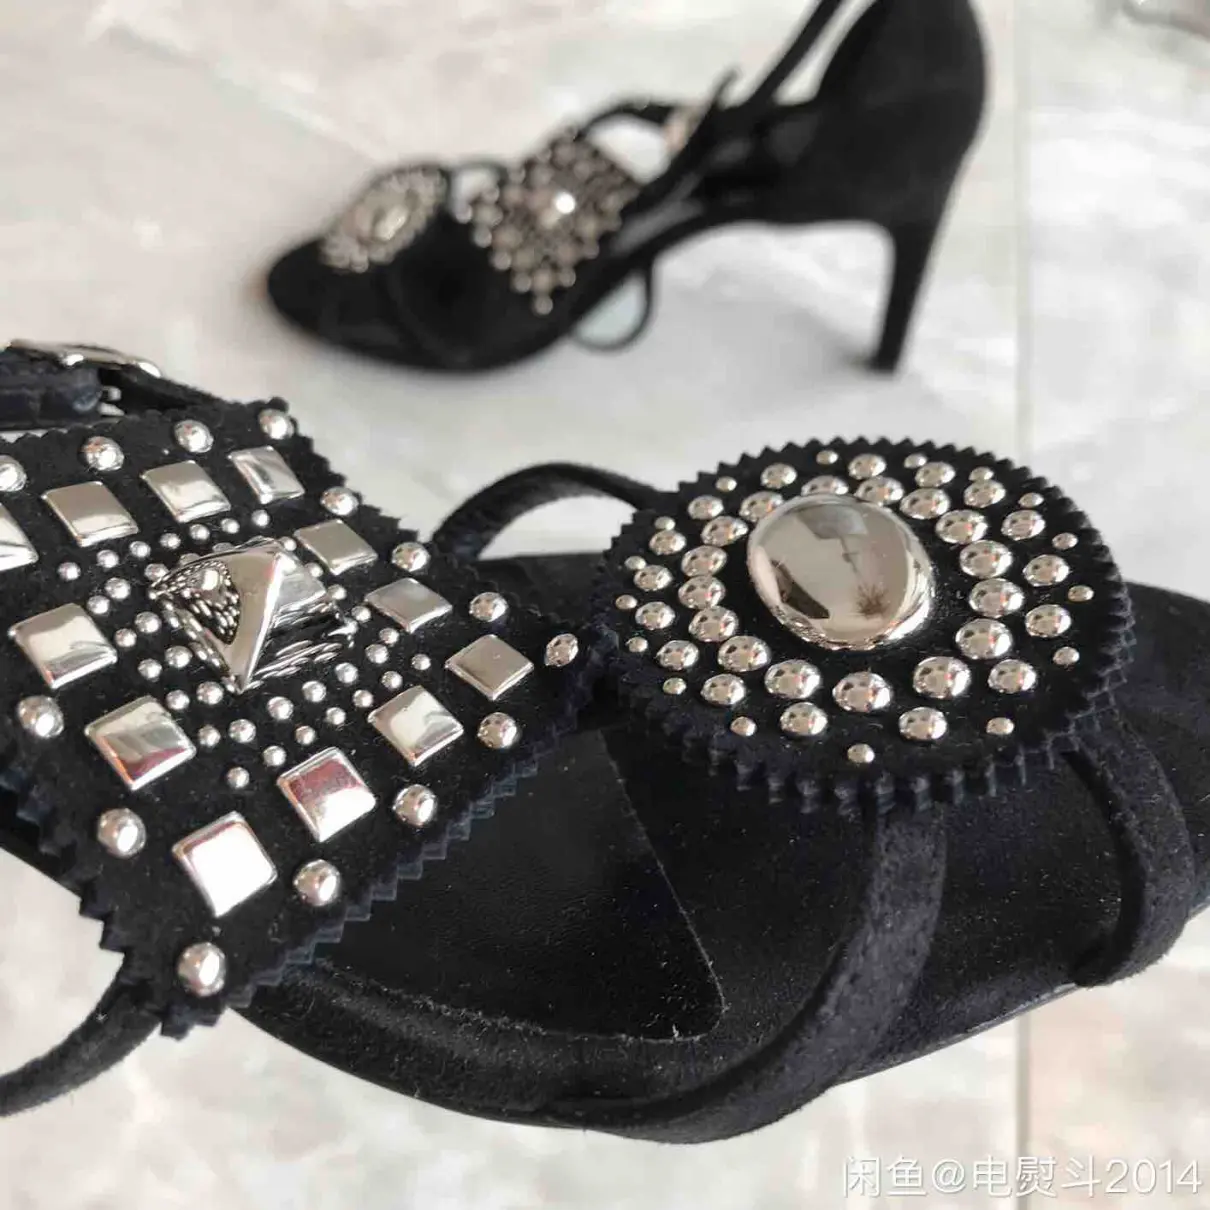 Leather sandals Hermès